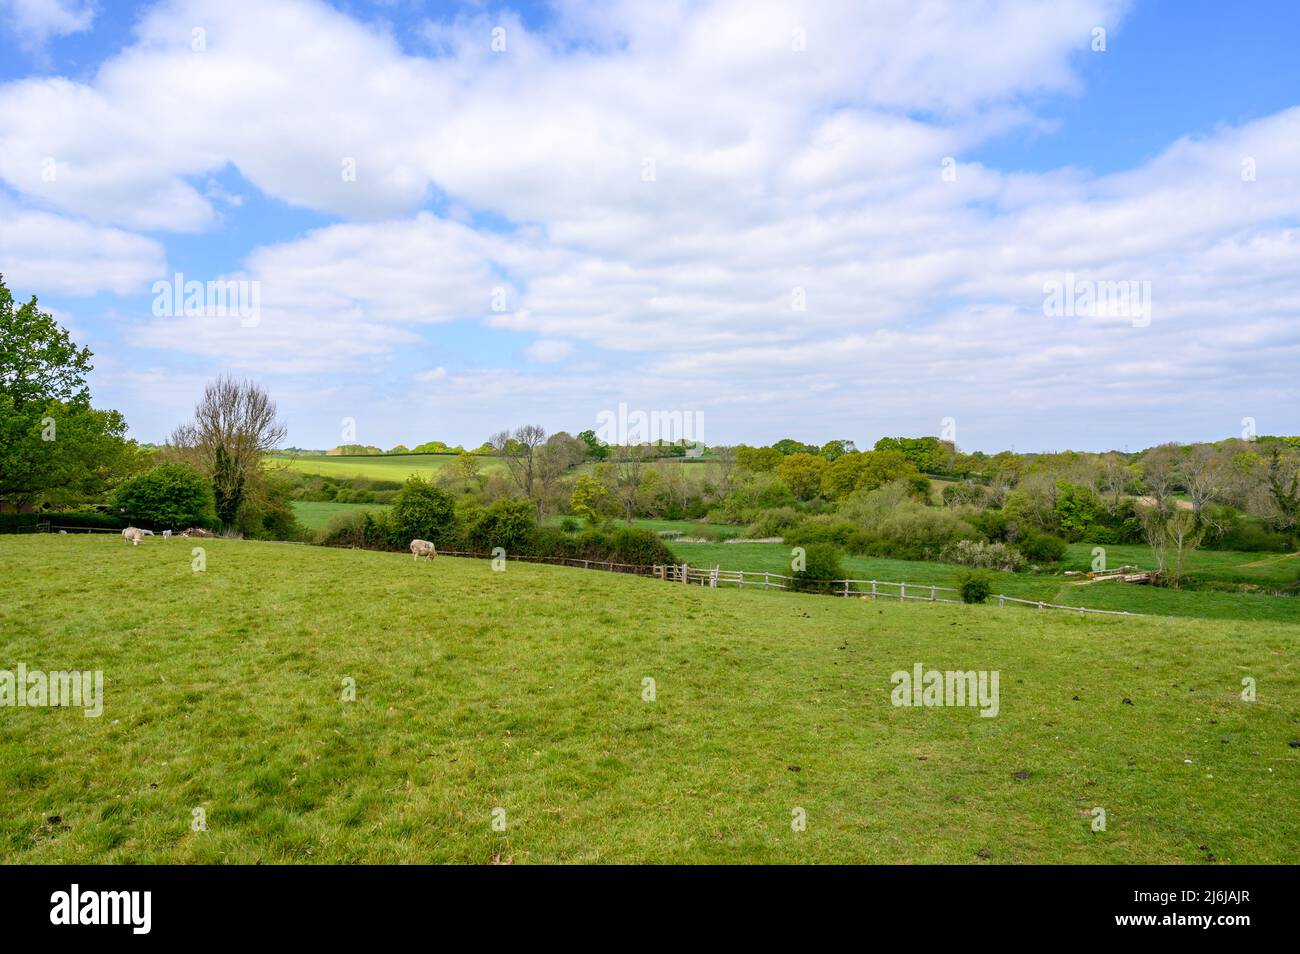 Qualche pecora che pascola in un campo in paese agricolo con pascoli e boschi su dolci colline ondulate vicino a Bilingshurst nel Sussex occidentale, Inghilterra. Foto Stock